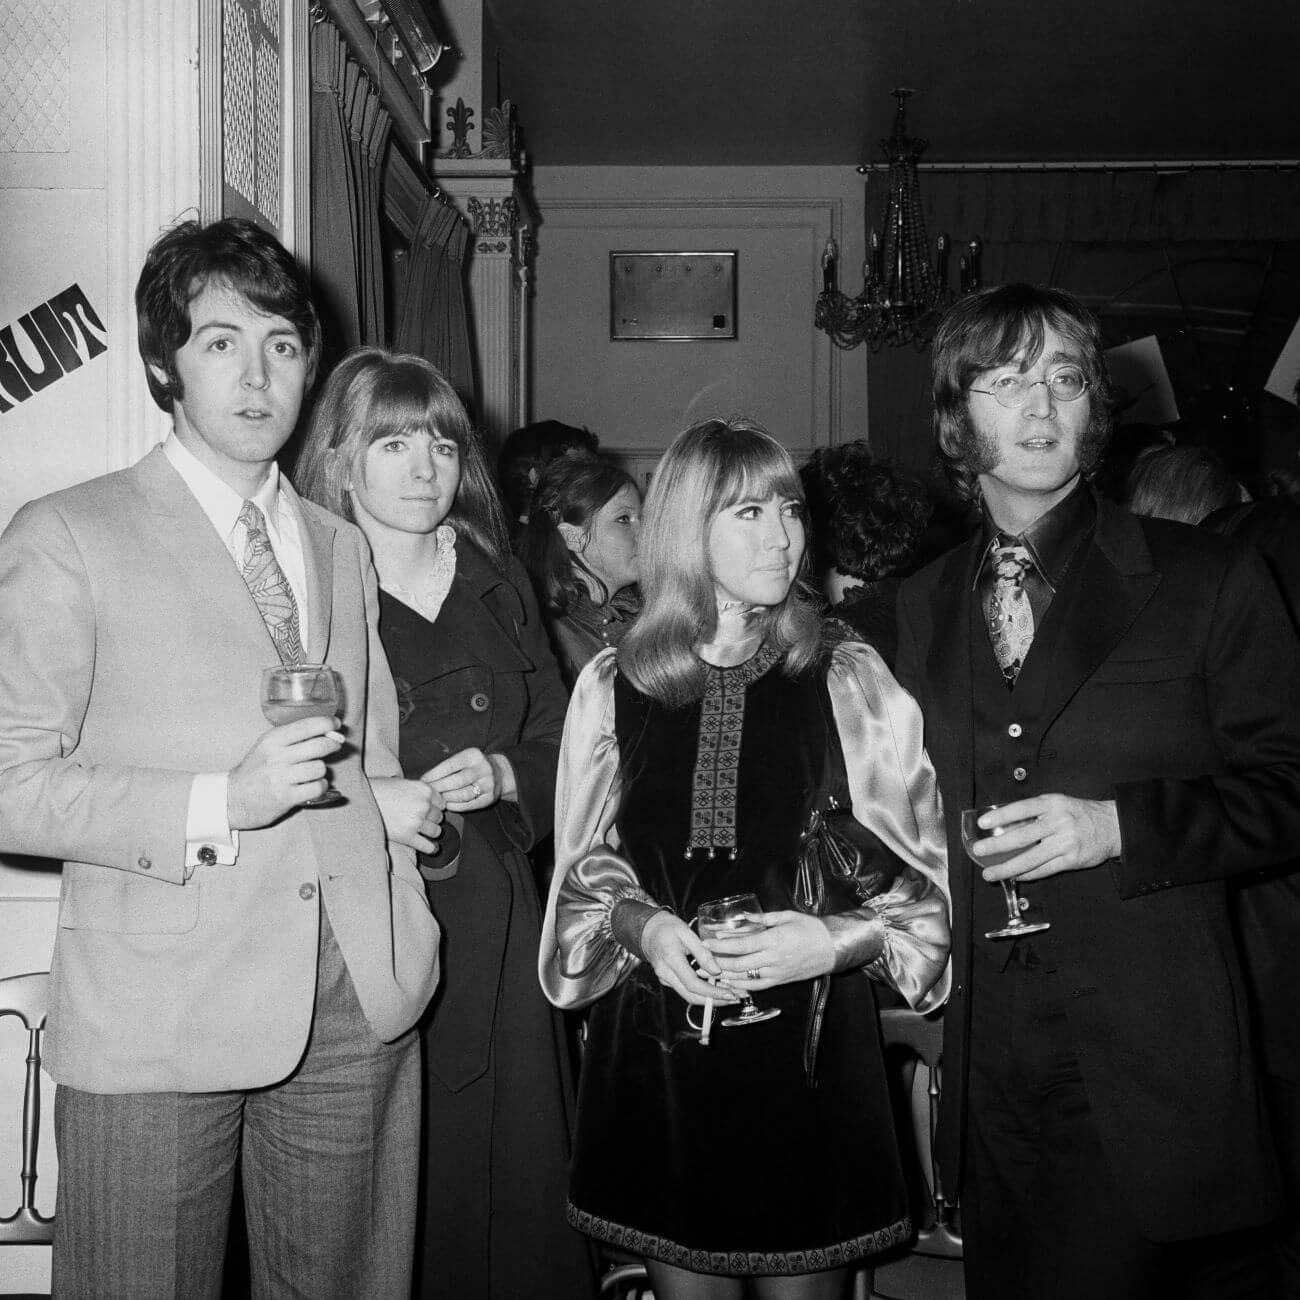 Paul McCartney ha ricordato il momento di incurante crudeltà che pose fine al primo matrimonio di John Lennon